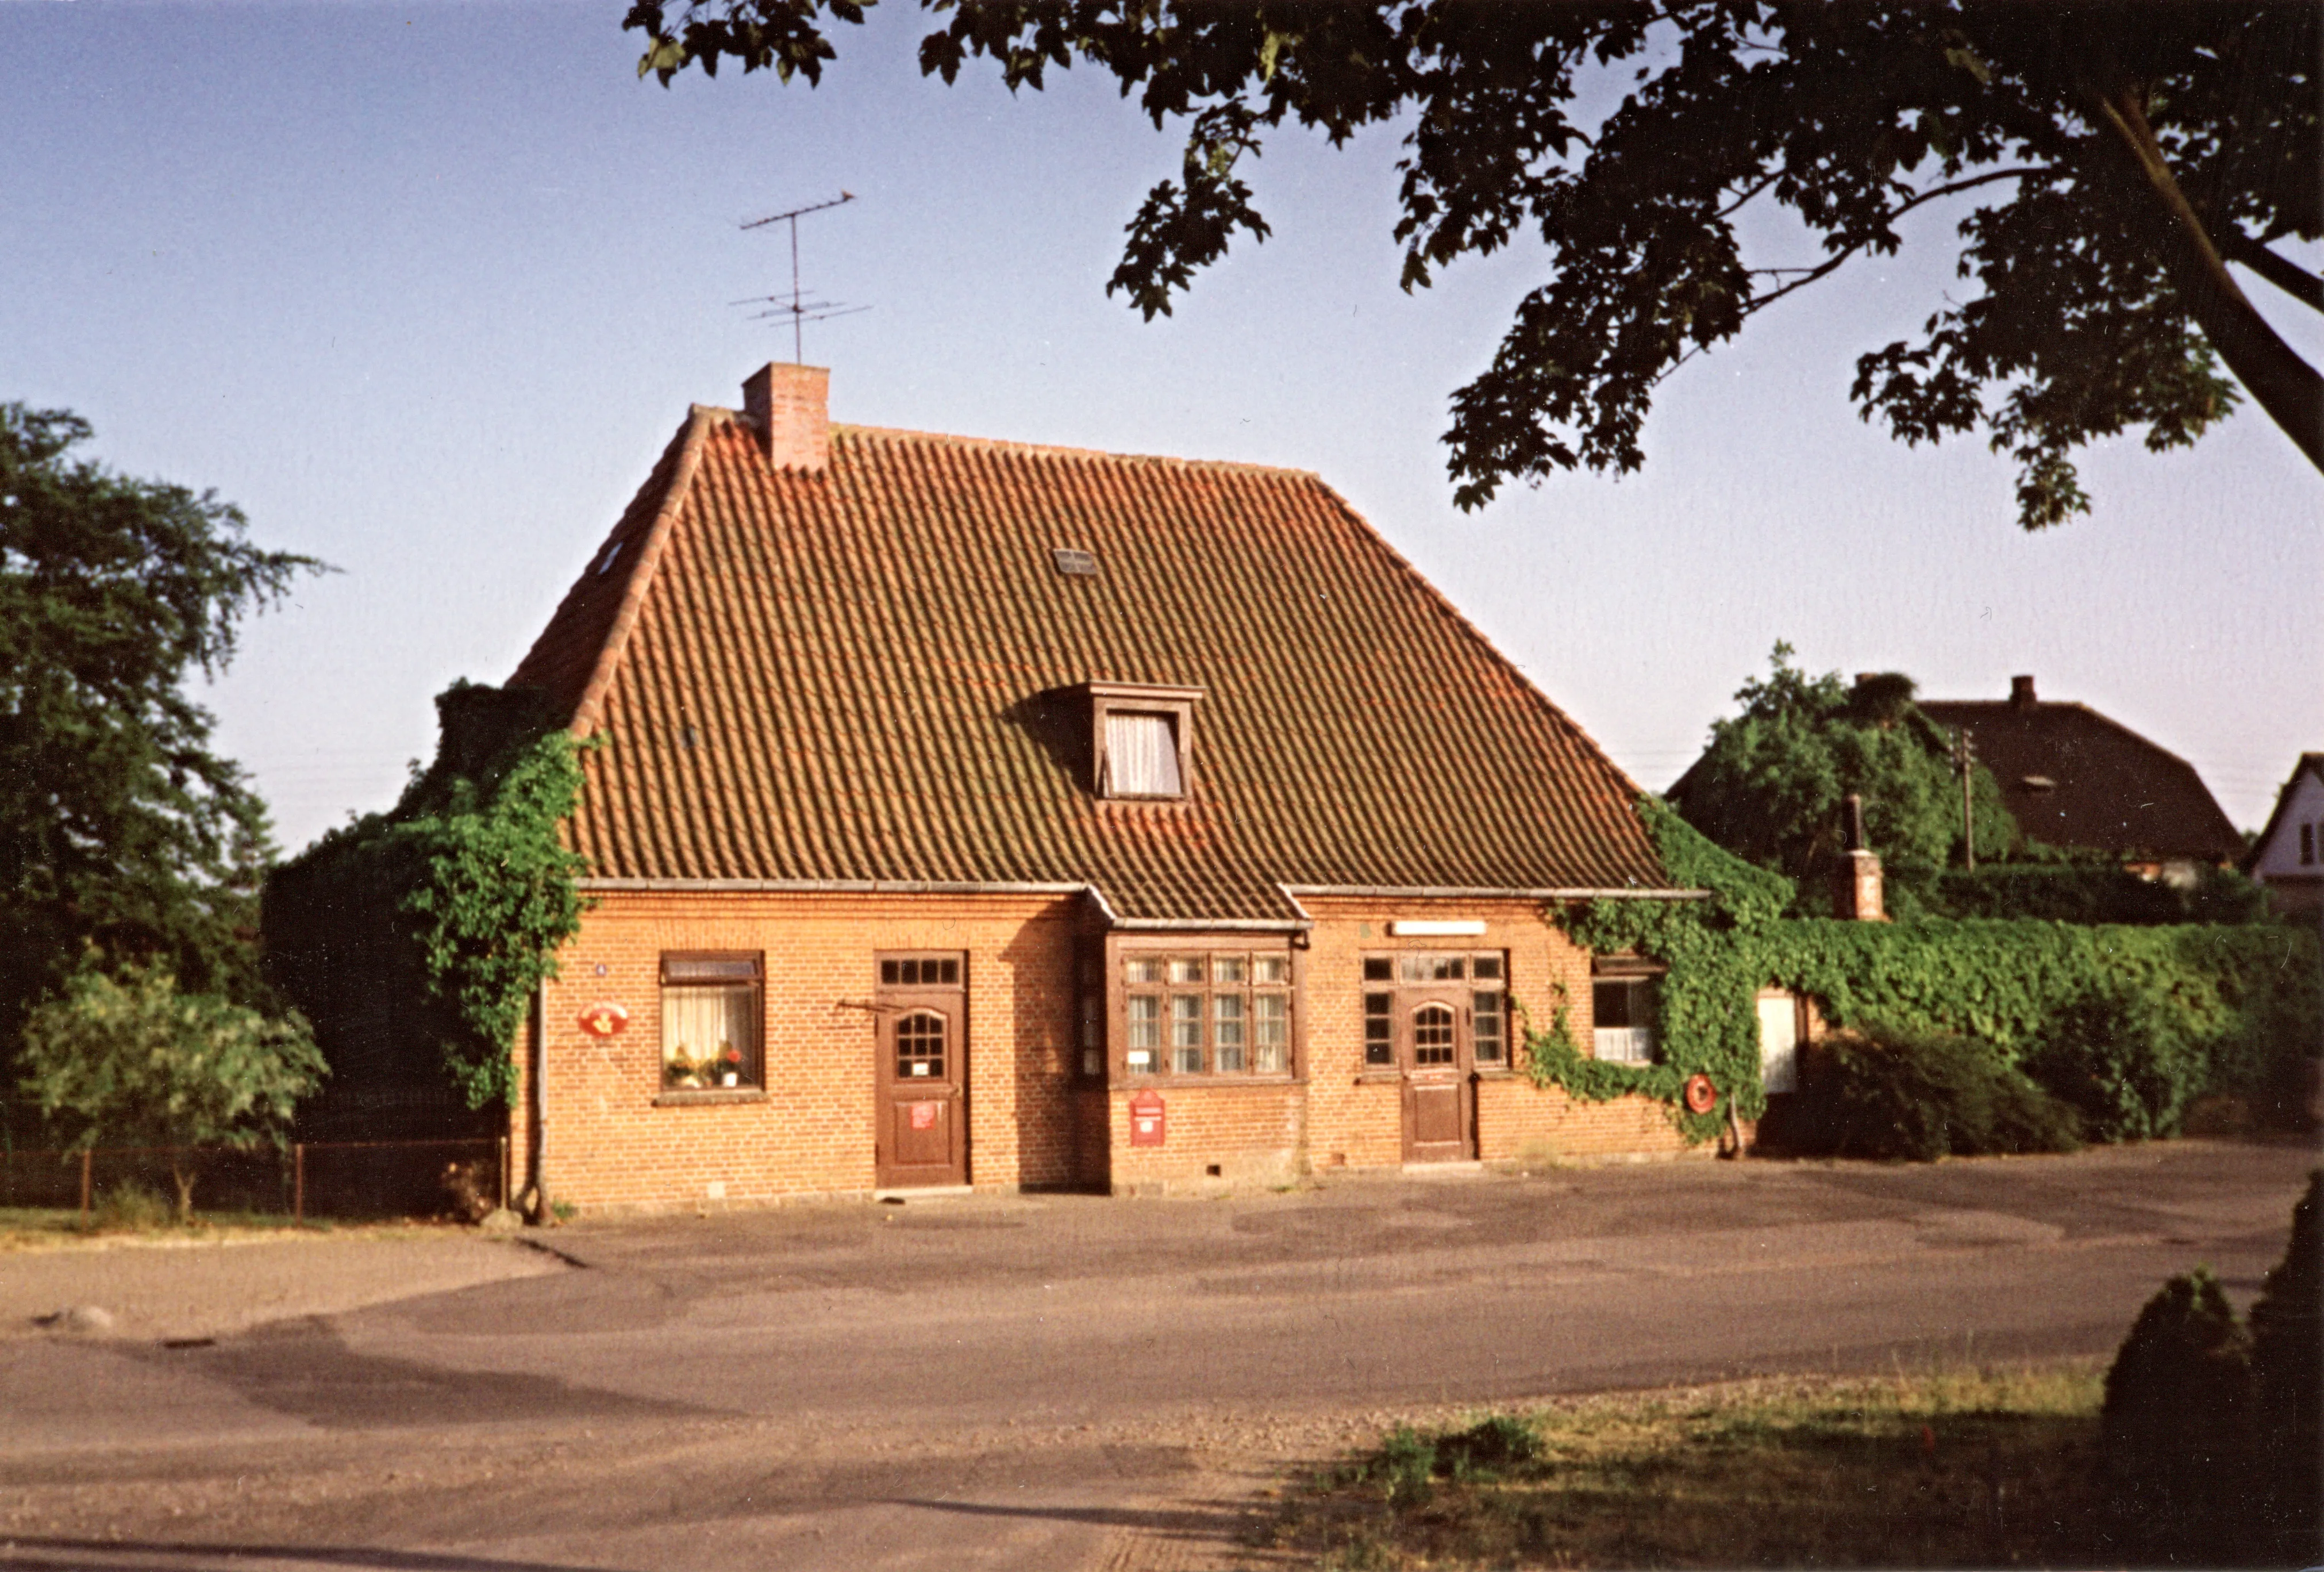 Postkort med Eskebjerg Station.